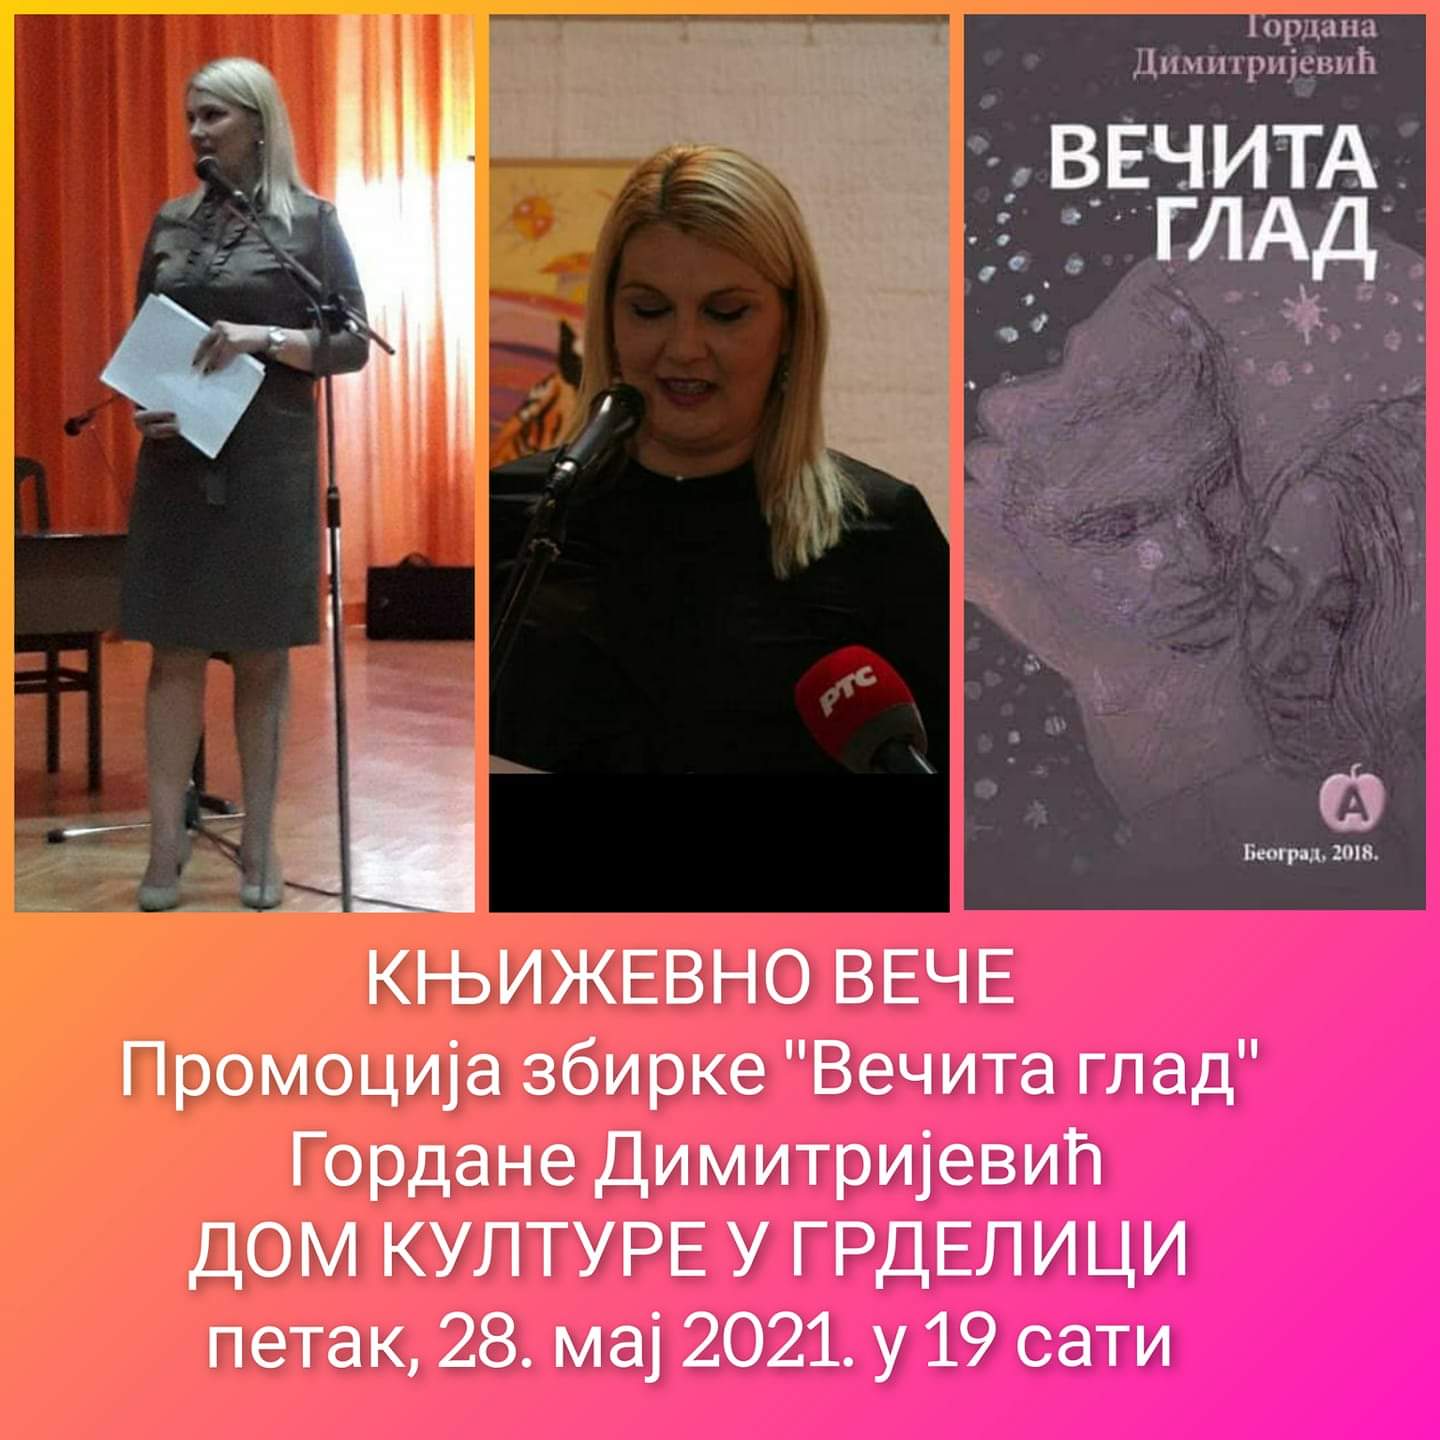 Promocija knjige Gordane Dimitrijević 